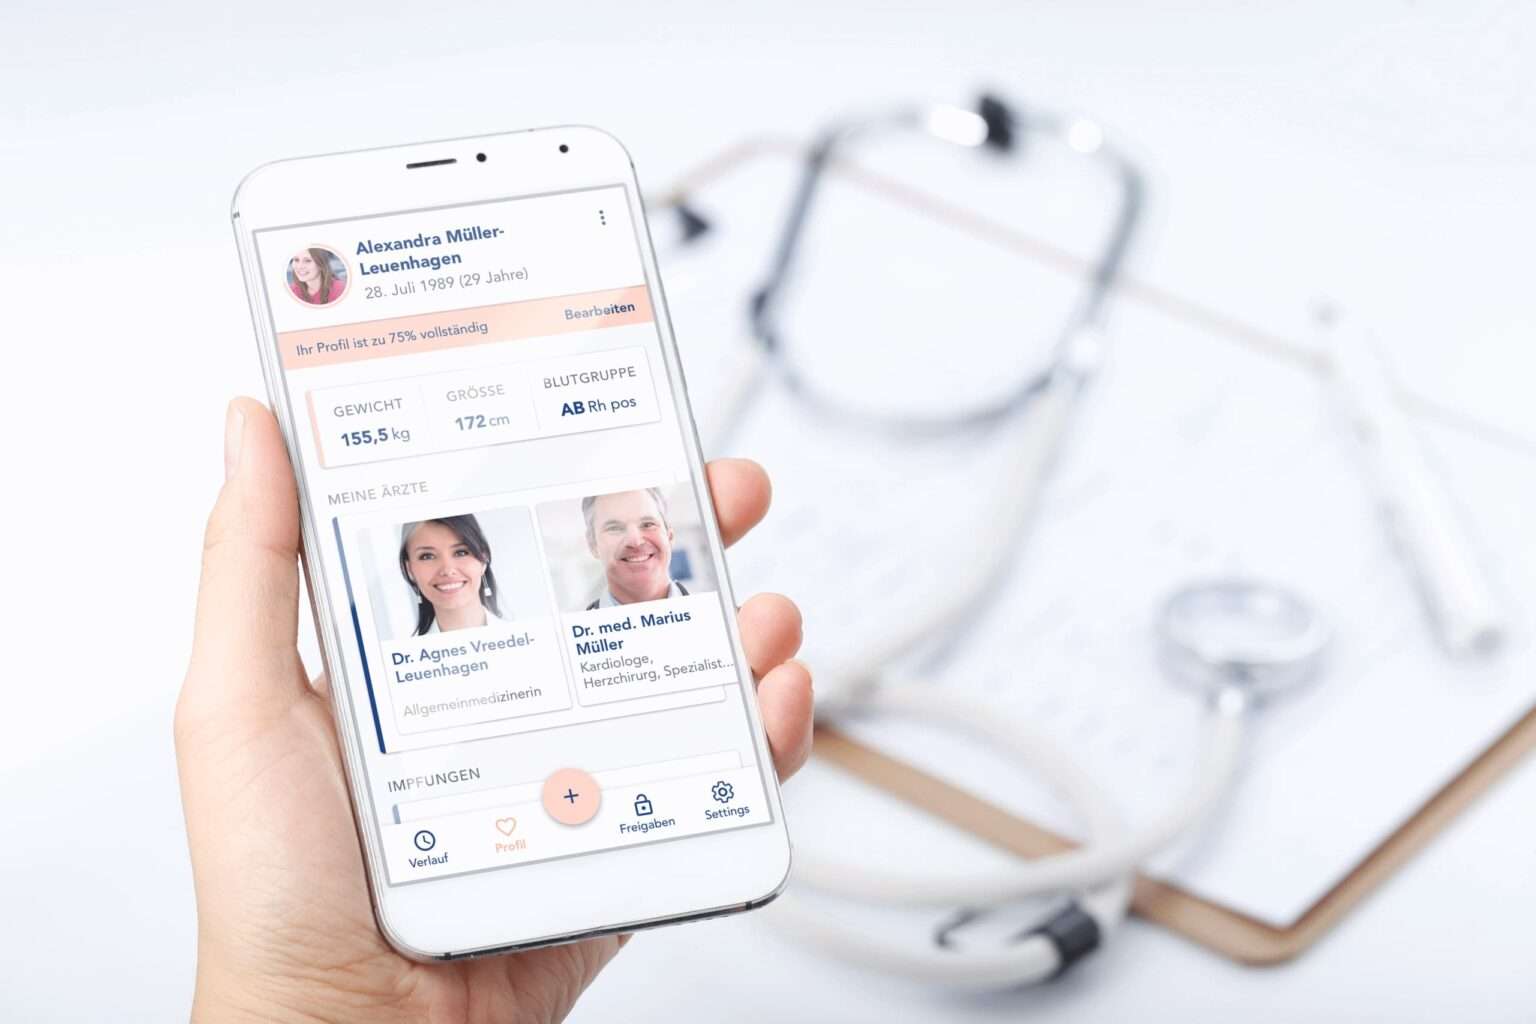 Die CGM LIFE App im Bild ist ein Produkt für den Digital Health App Bereich. Eine digitale Patientenakte, die den Patientinnen und Patienten mehr Kontrolle über ihre Gesundheitsdaten gibt.